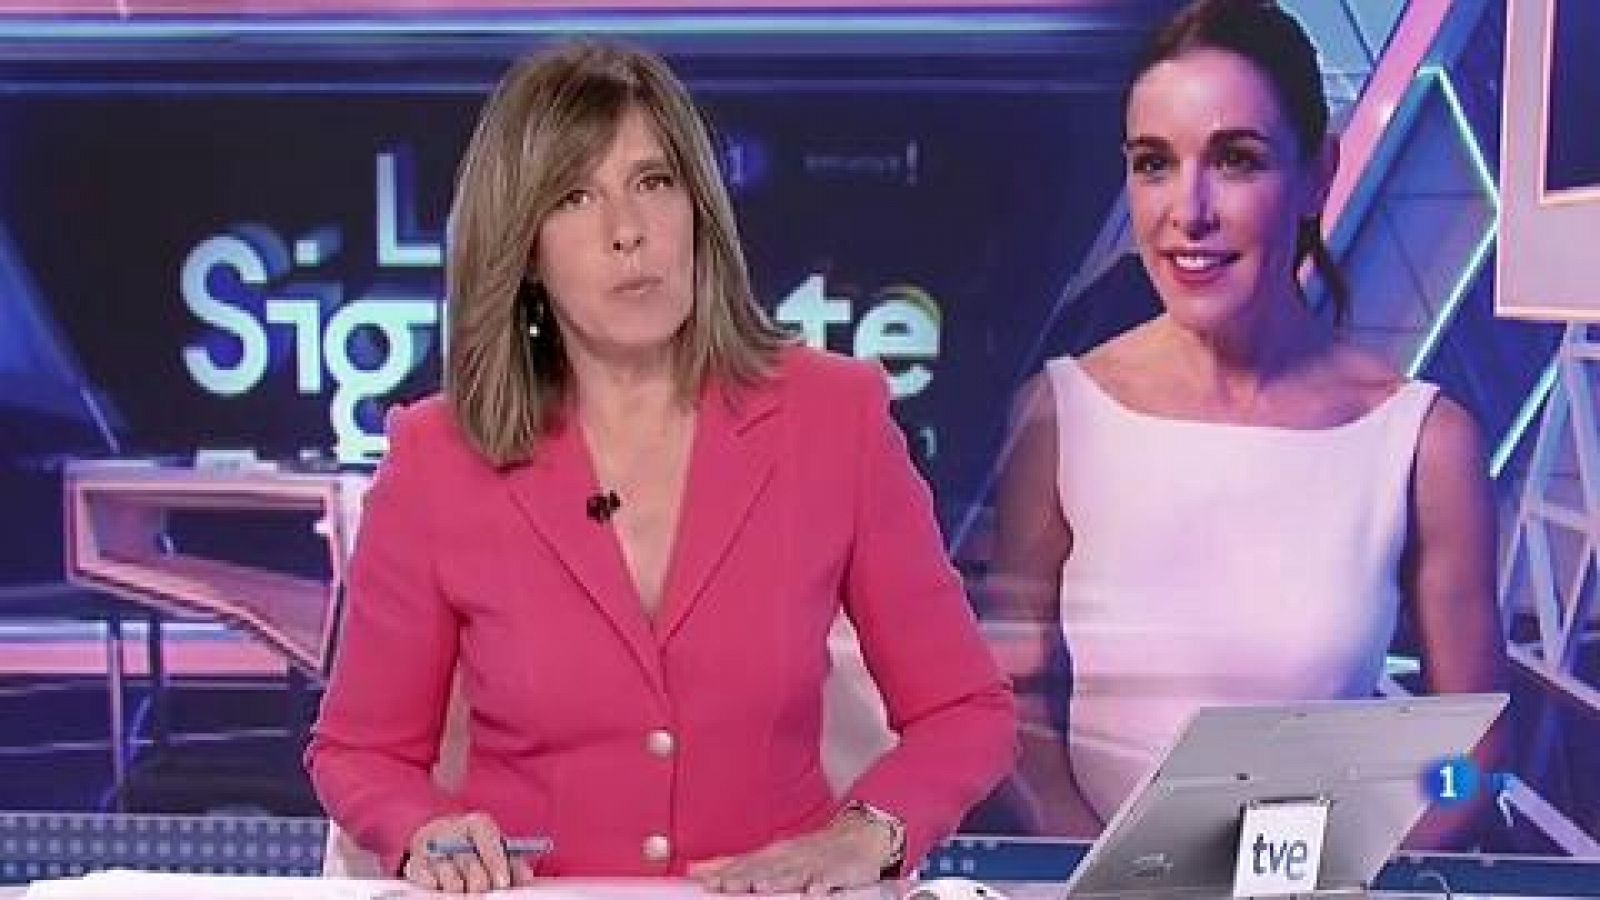 Telediario - Raquel Sánchez Silva presenta 'Lo siguiente', el próximo programa del access de La 1